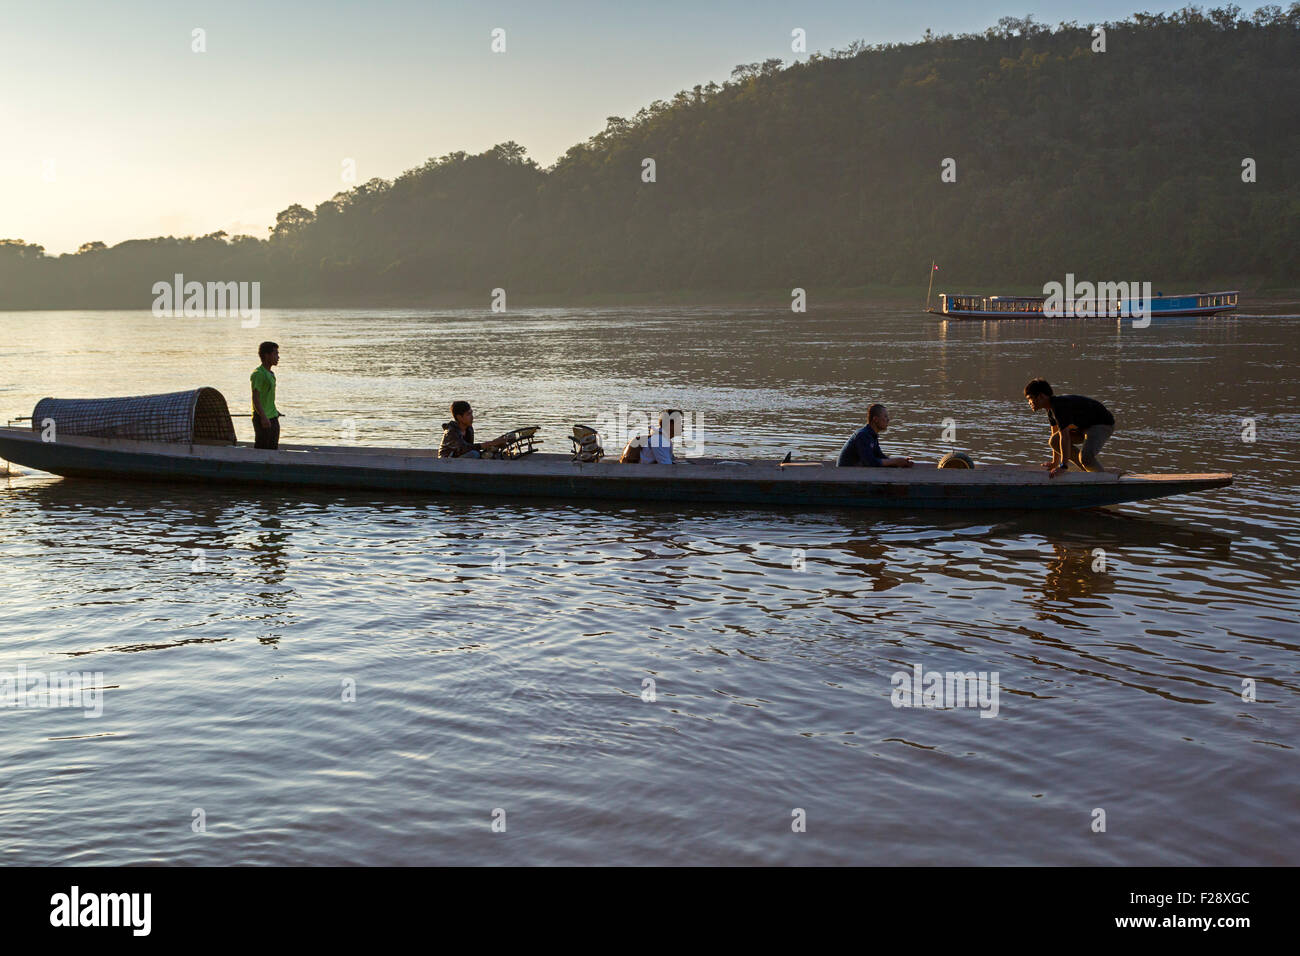 Ferry boat on Mekong river at Luang Prabang, Laos Stock Photo